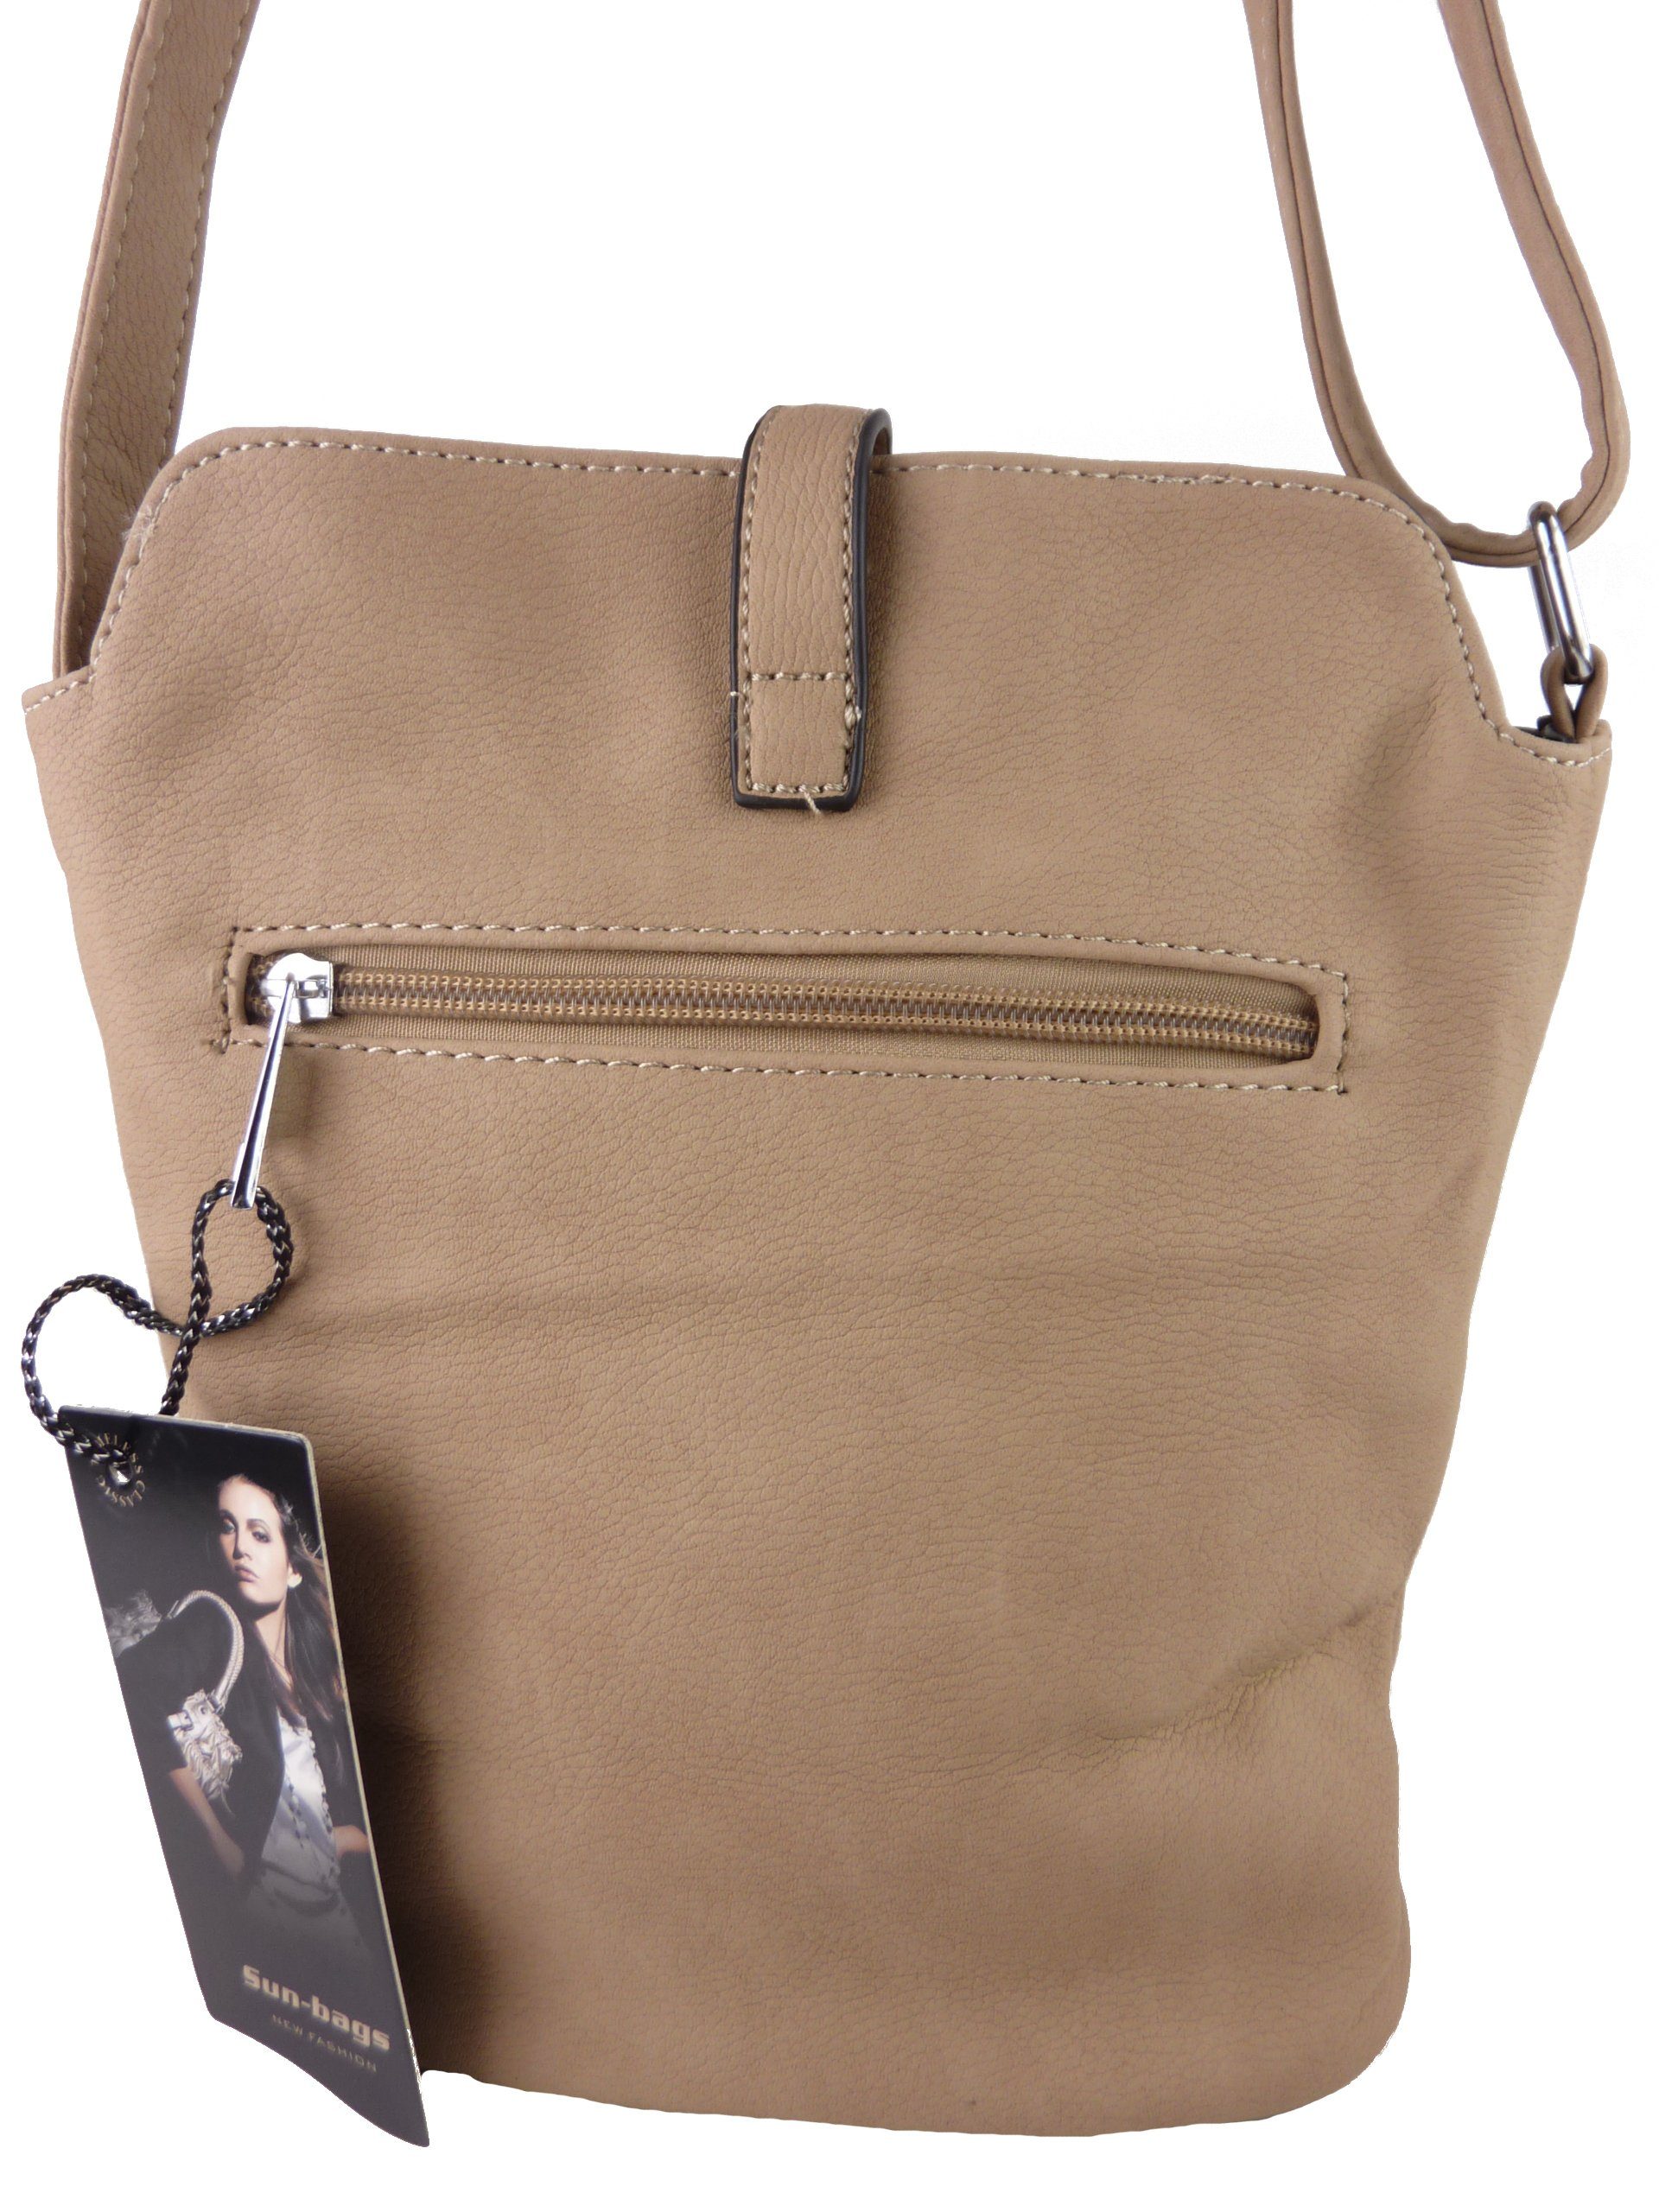 zweifarbiges Tasche tragbar, umhängen H0447, als khaki/braun Schultertasche zum Muster Streifen Umhängetasche cross Taschen4life kleine & over